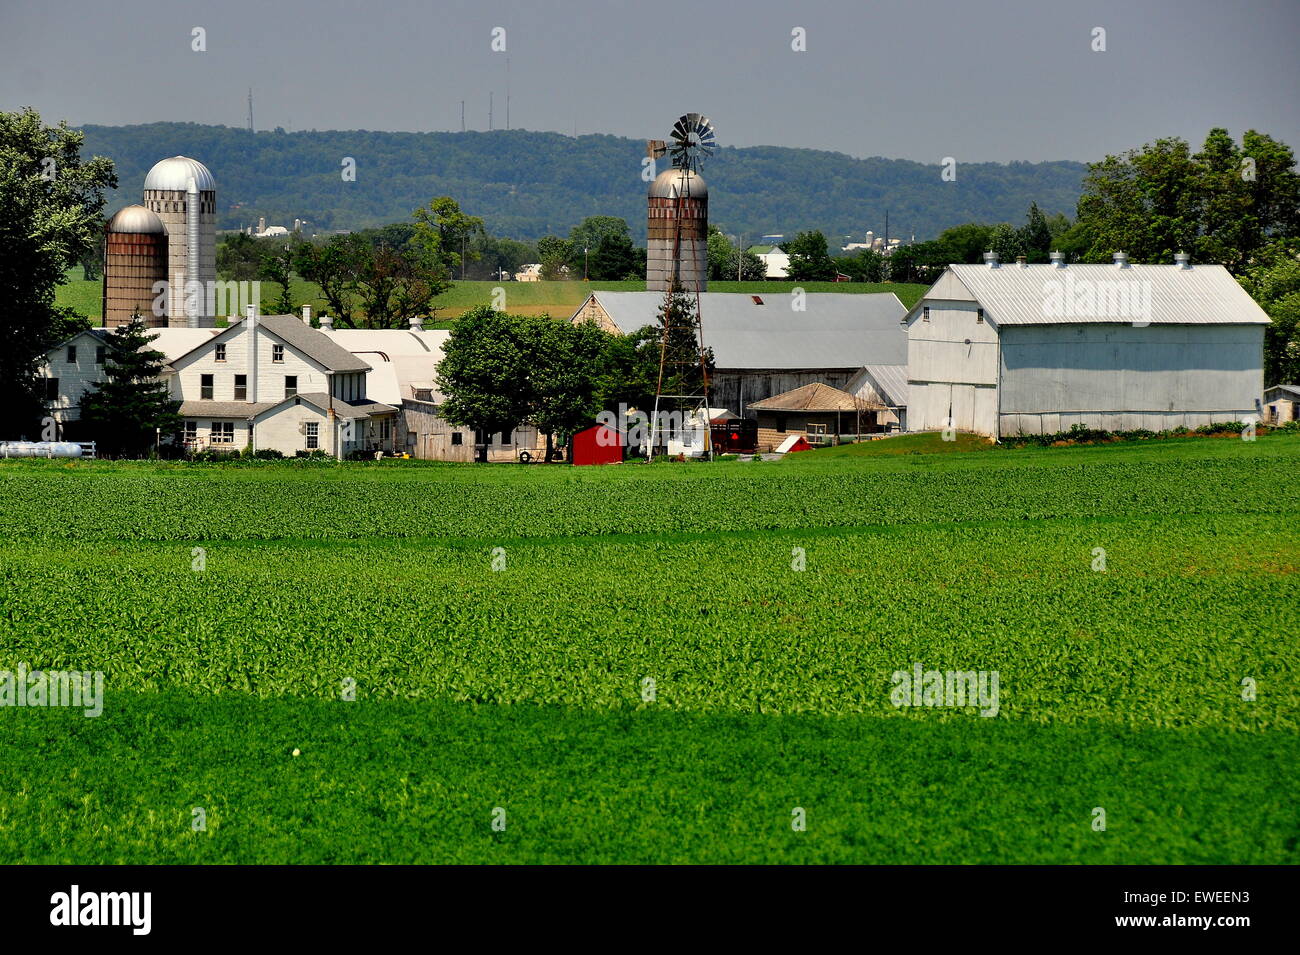 Lancaster County, Pennsylvania: Ein große amischer Bauernhof mit Silos, Windmühle, Schuppen und Bauernhaus inmitten von grünen Ackerland * Stockfoto